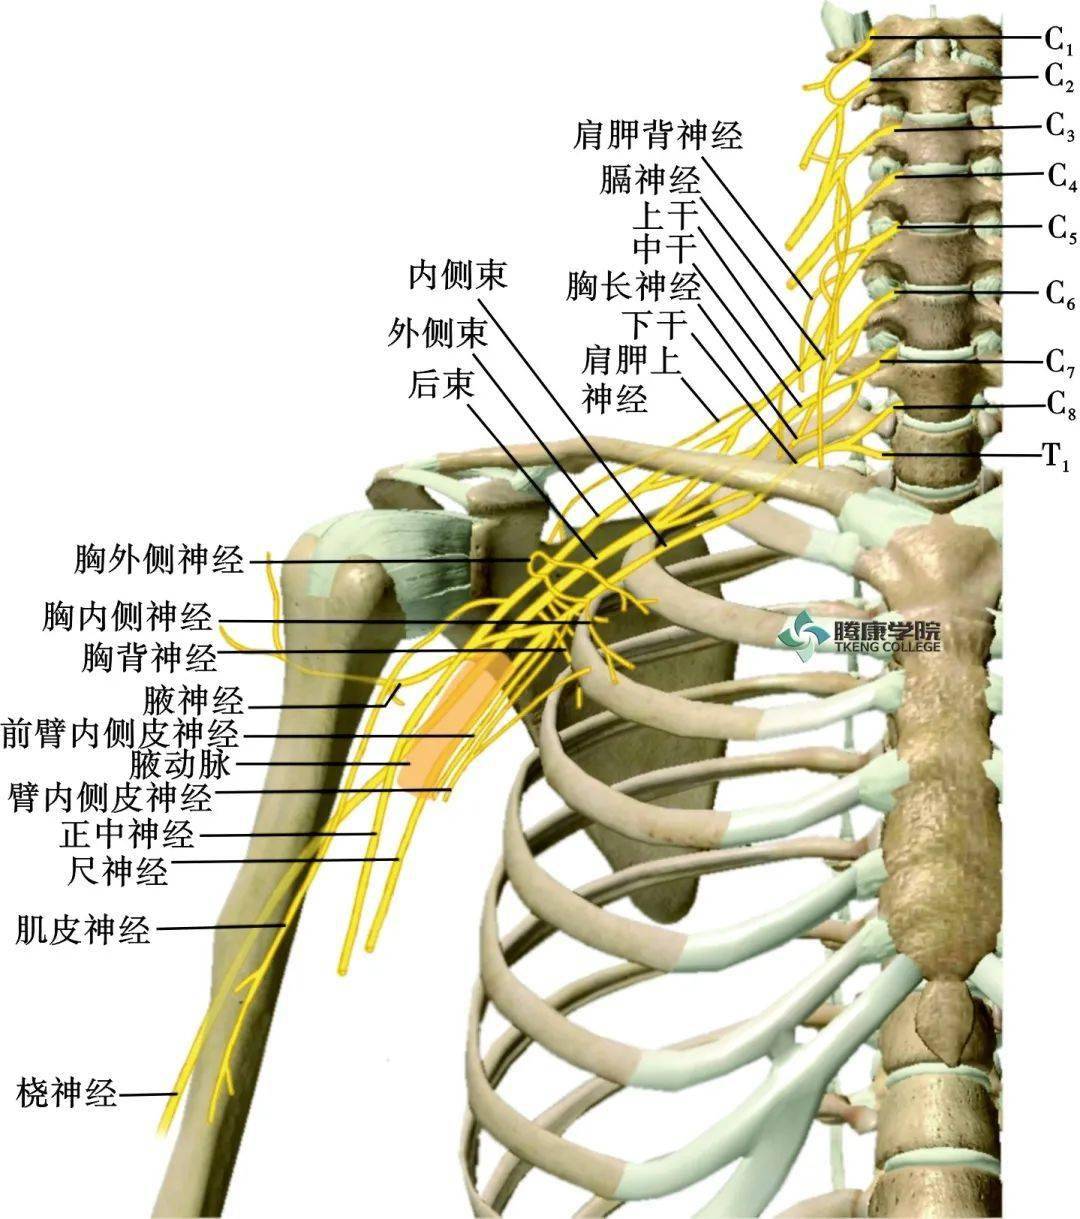 臂丛的支分布于胸上肢肌,上肢带肌,背浅部肌(斜方肌除外)以及臂,前臂